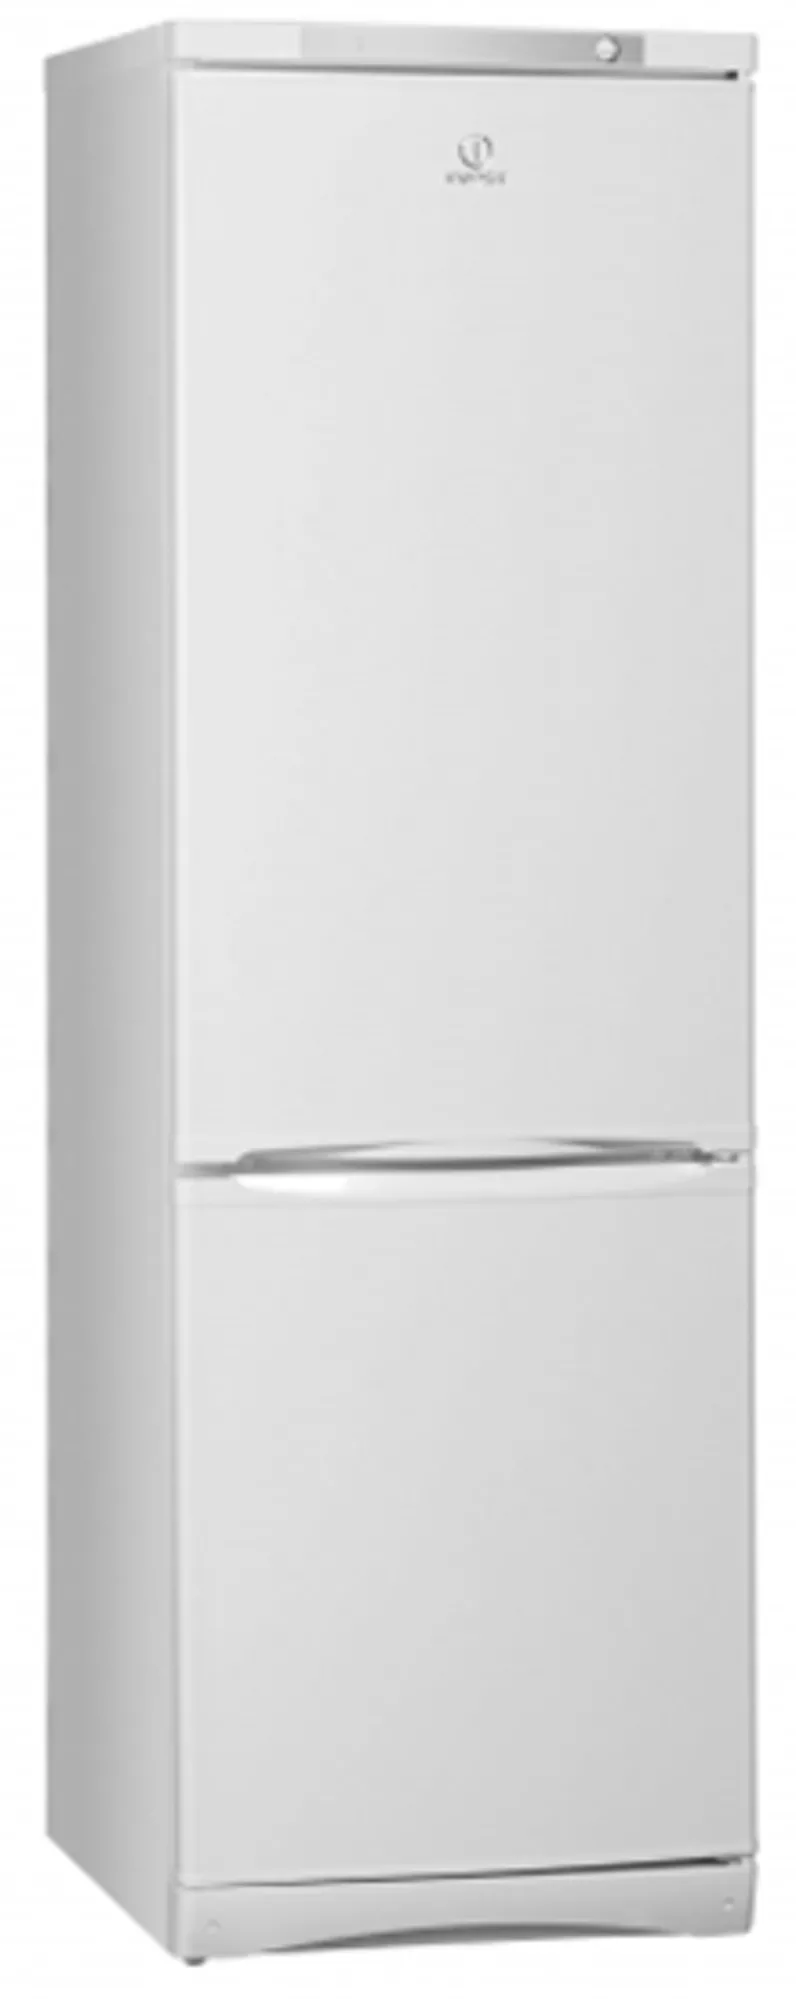 Продам новый холодильник Indesit NBS 18 AA